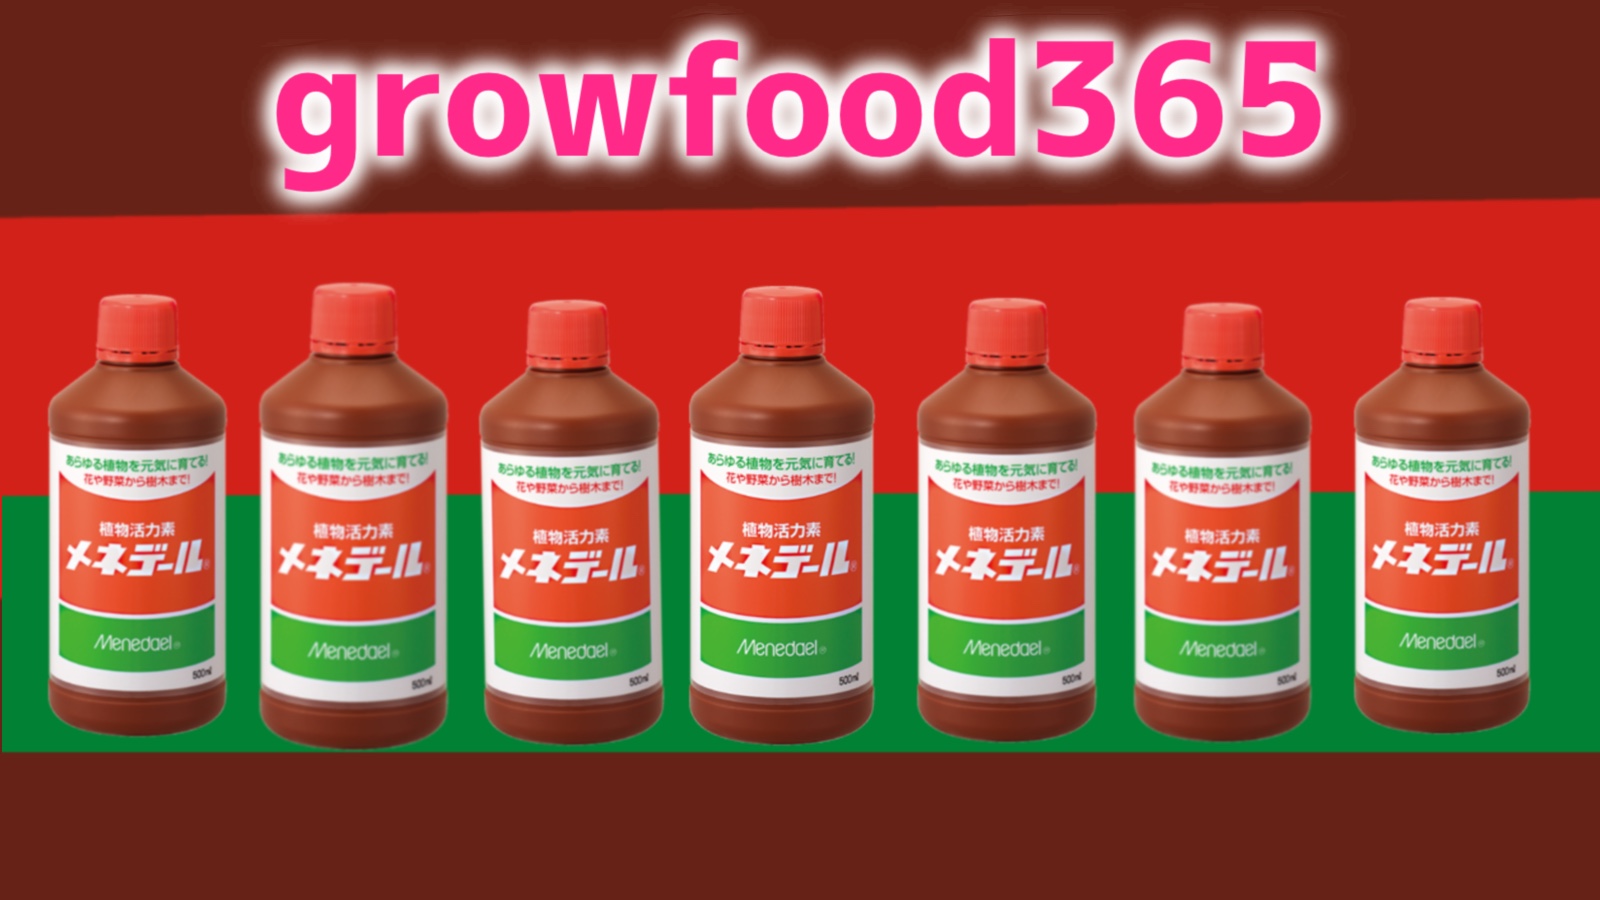 正しく使おう メネデールの効果的な使い方 Growfood365